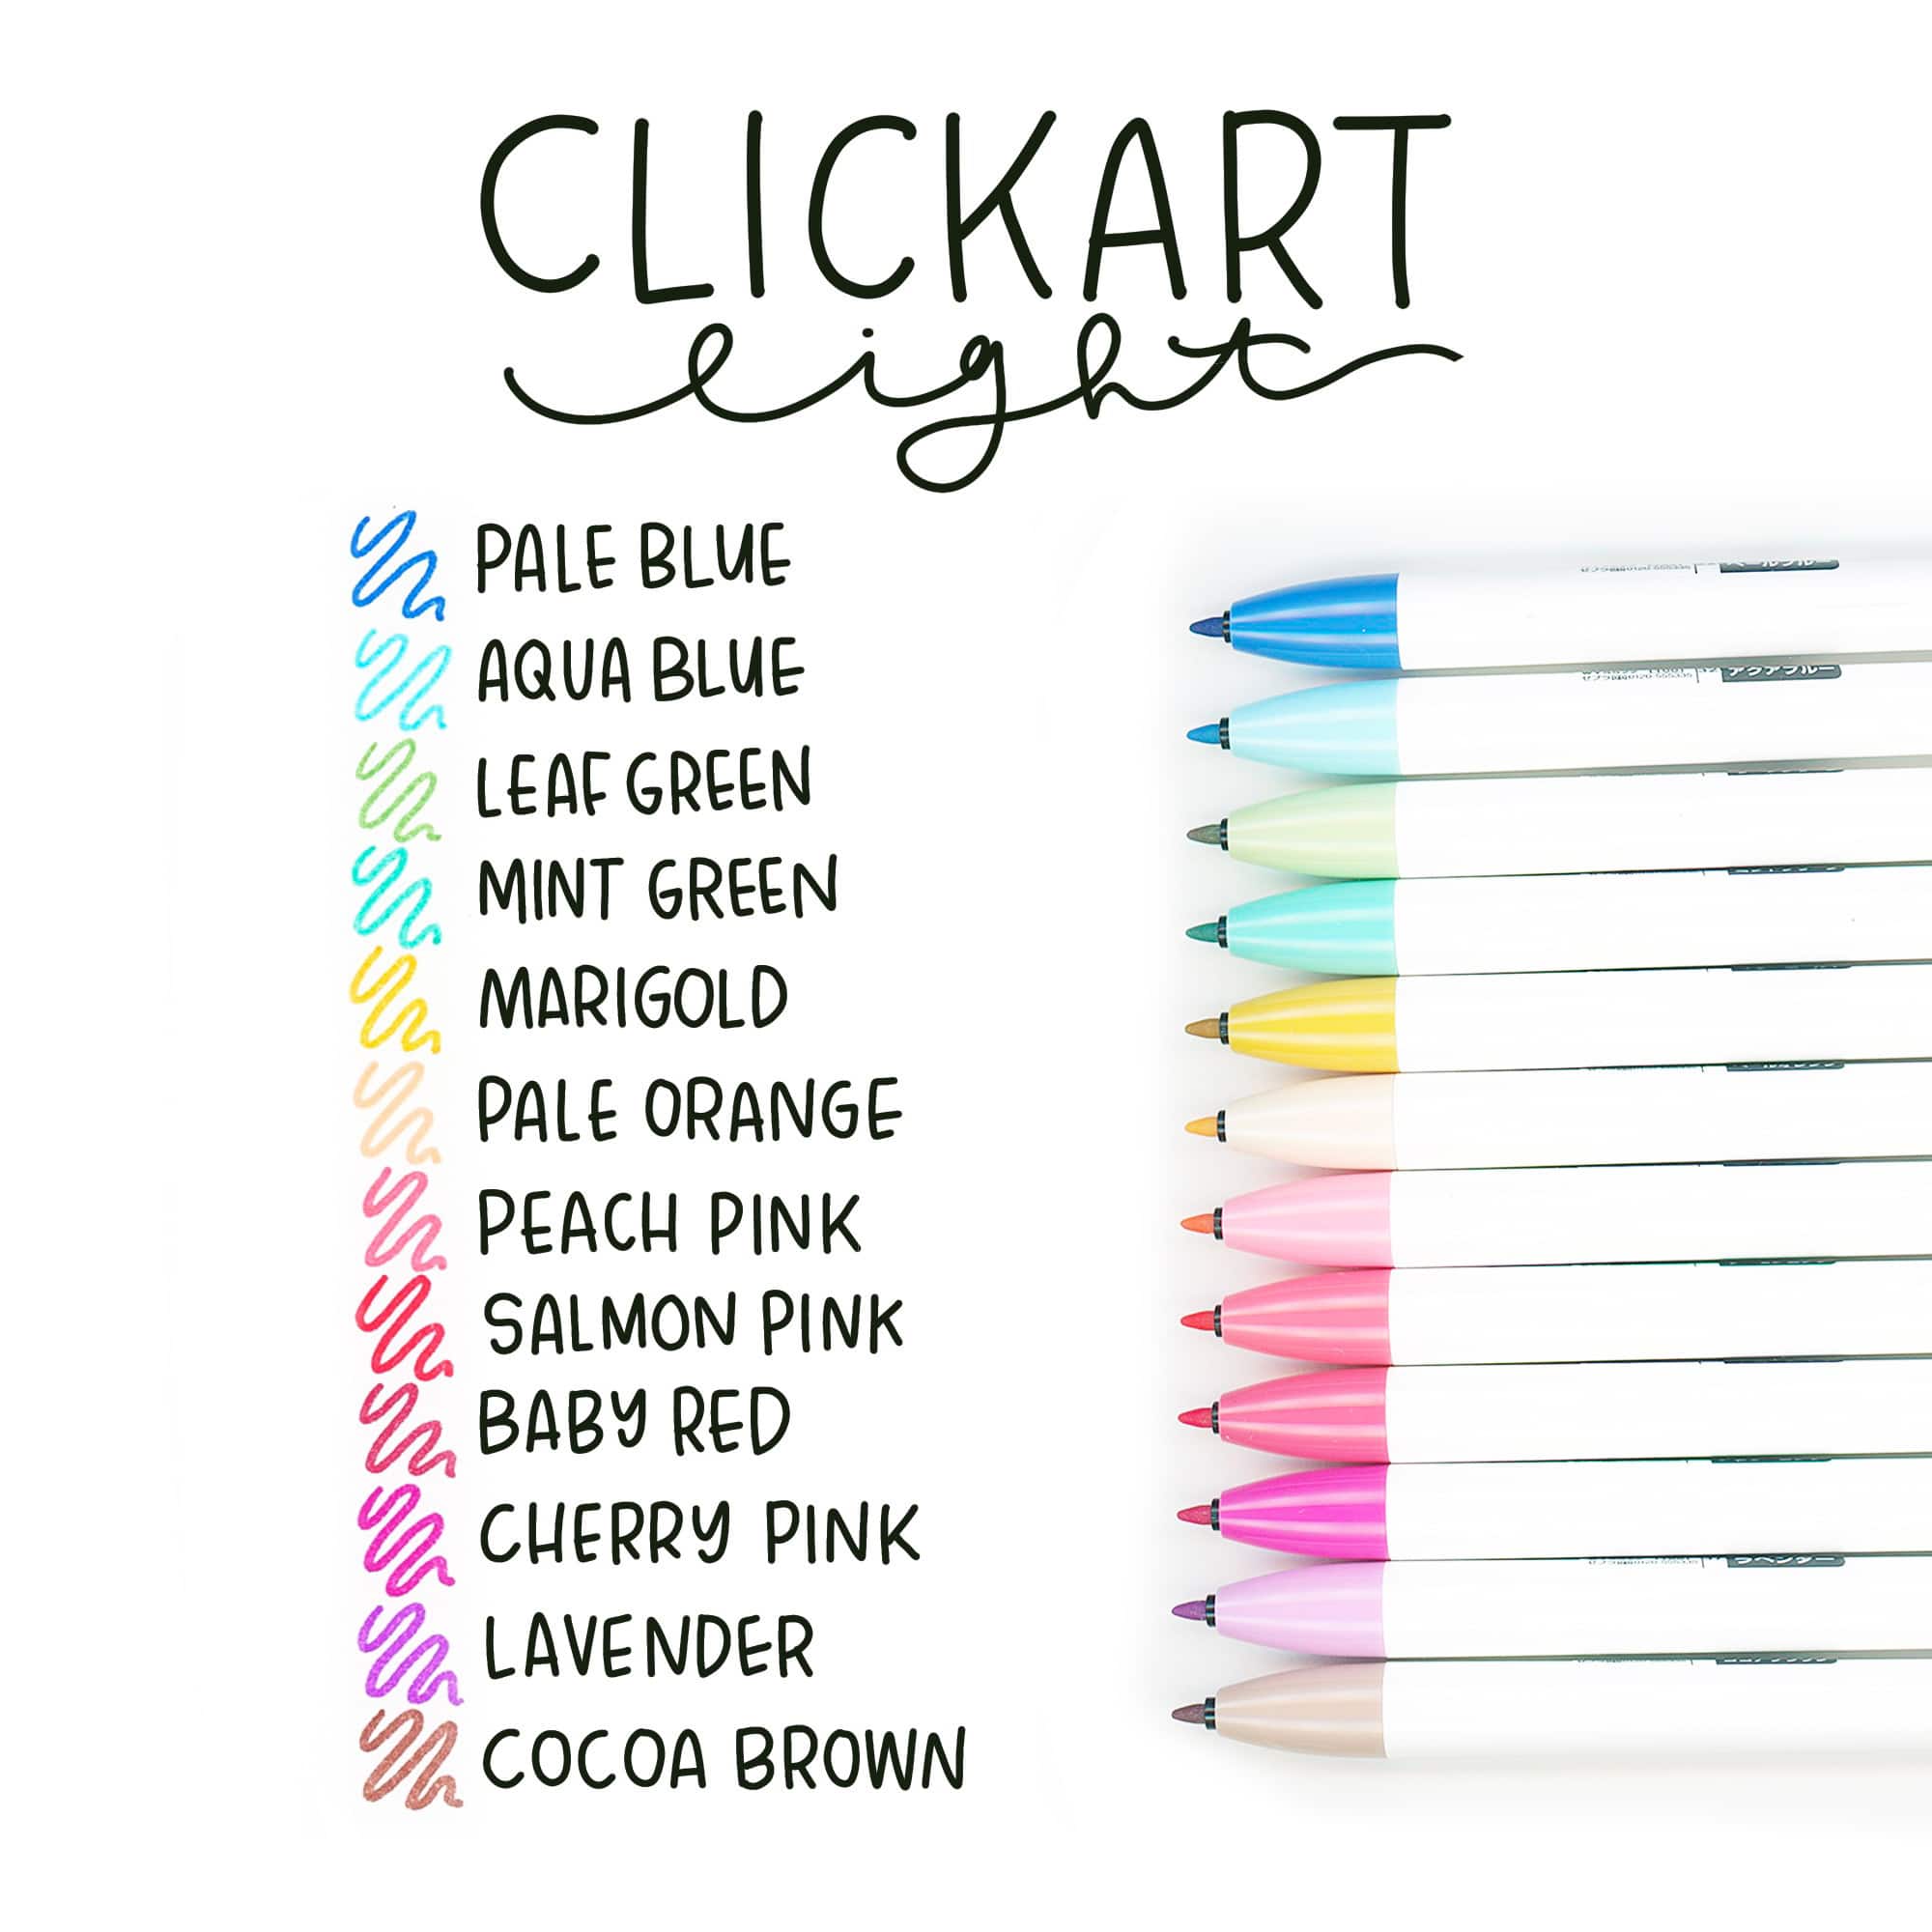 Zebra ClickArt Light Colors Retractable Marker Pen Set